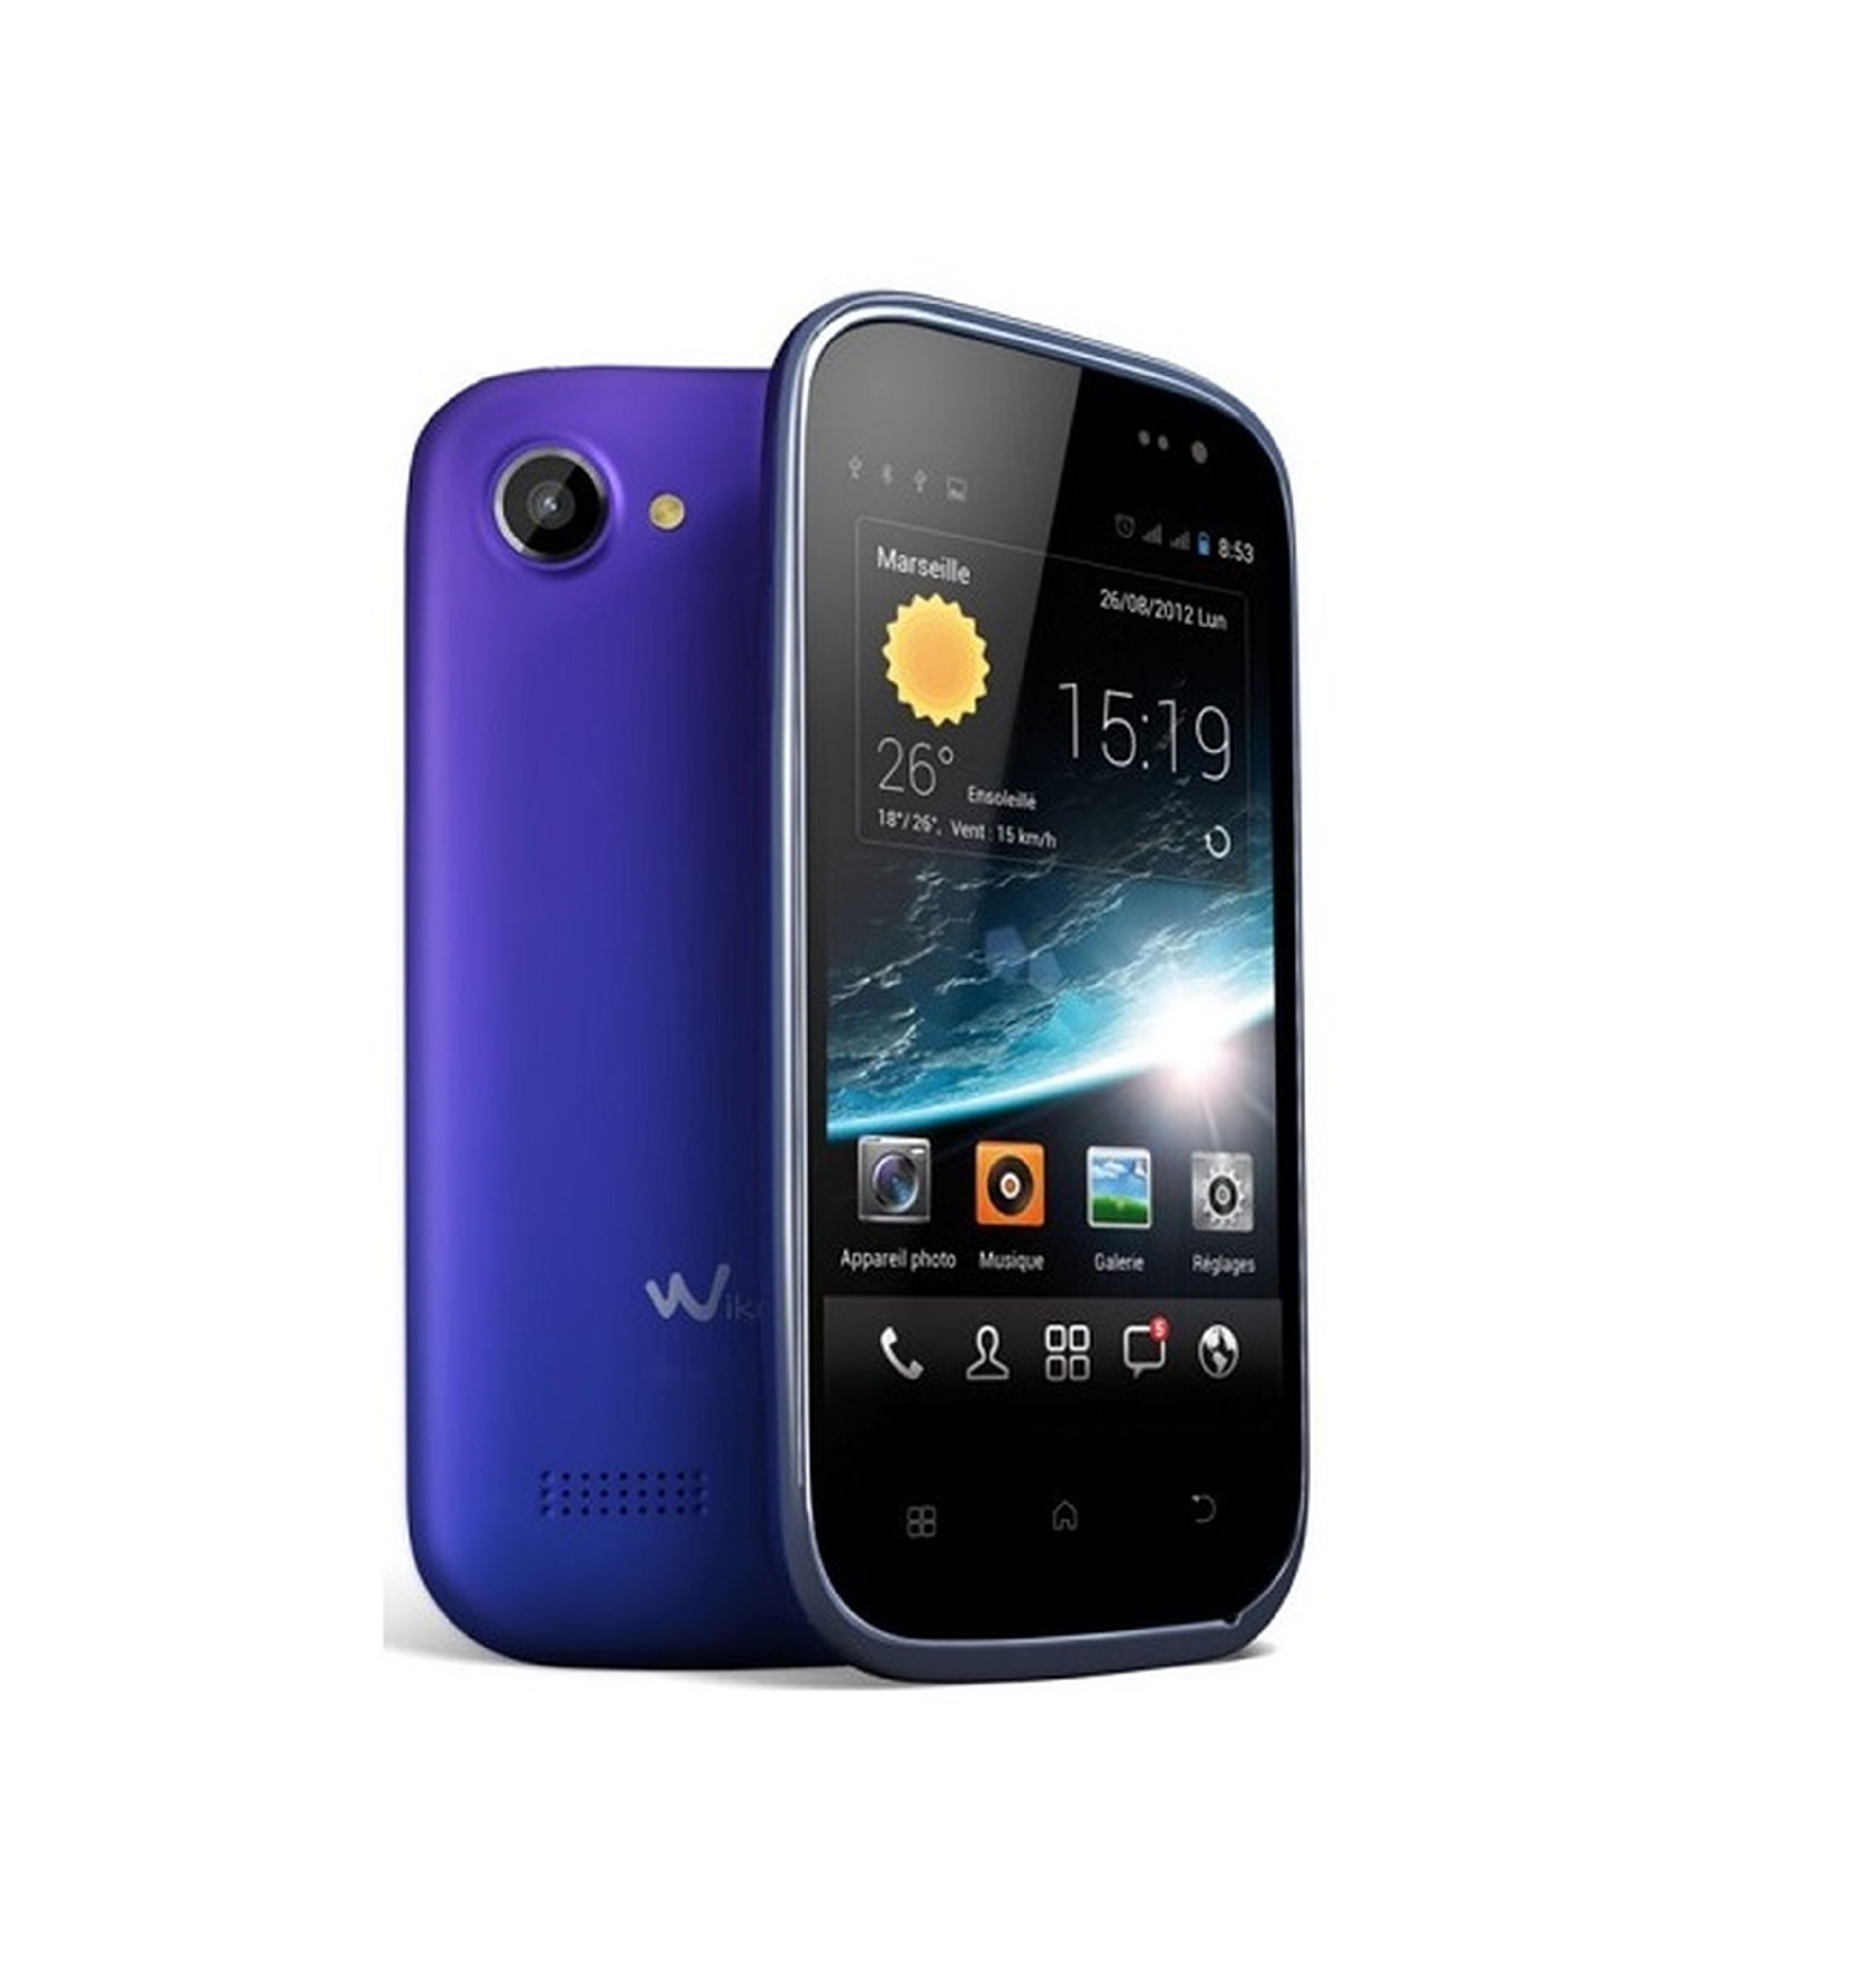 Wiko Cink Slim, smartphone potente y ligero por 129 euros